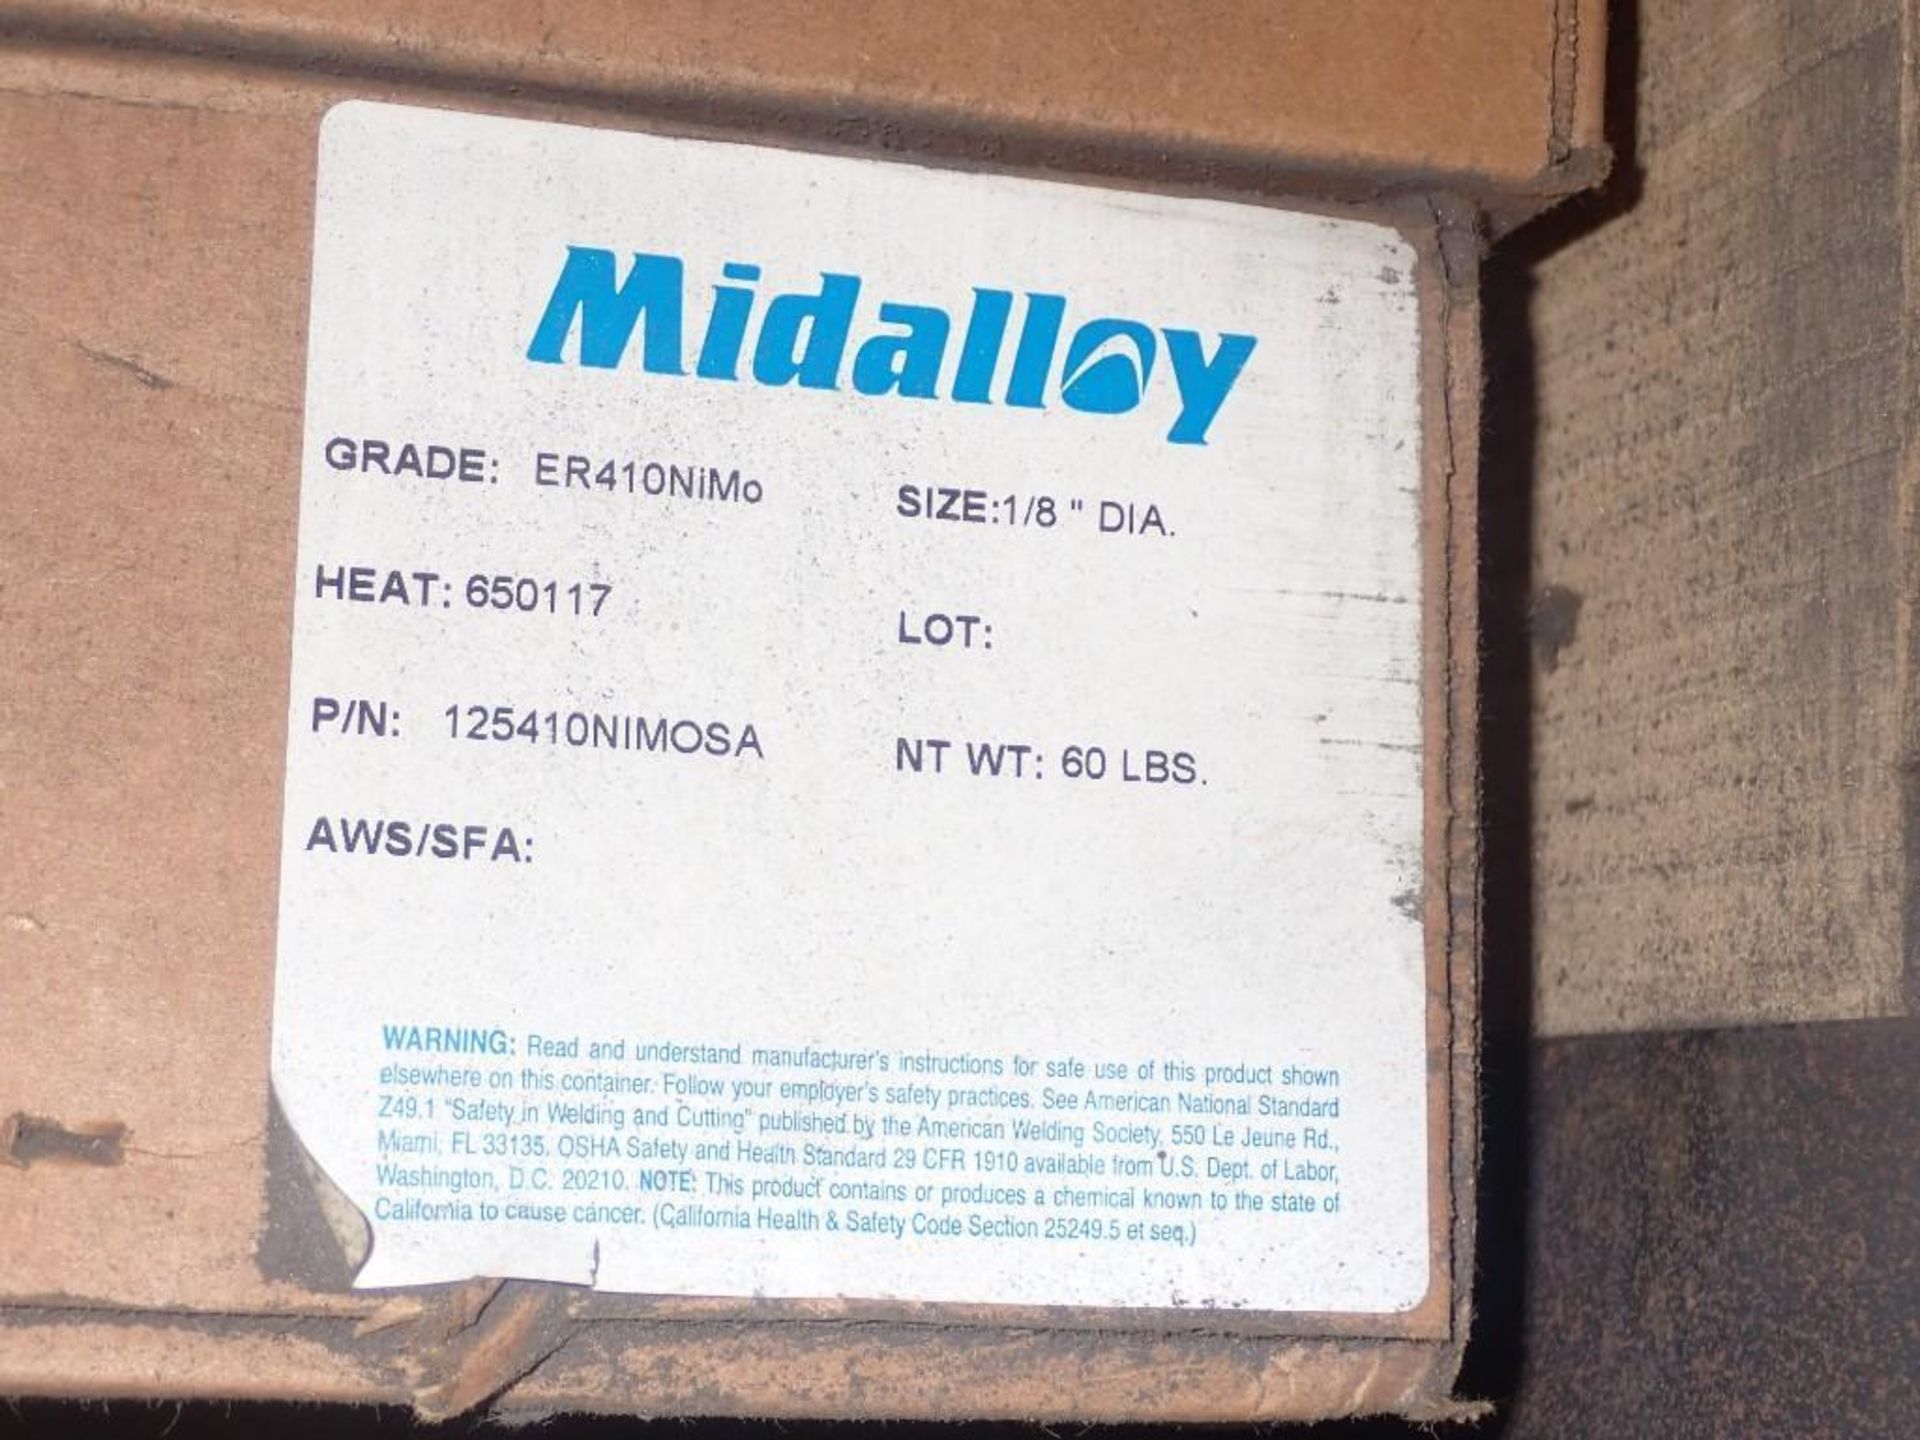 Crate of Midalloy Welding Supplies, 1/8" Diameter - Image 4 of 7